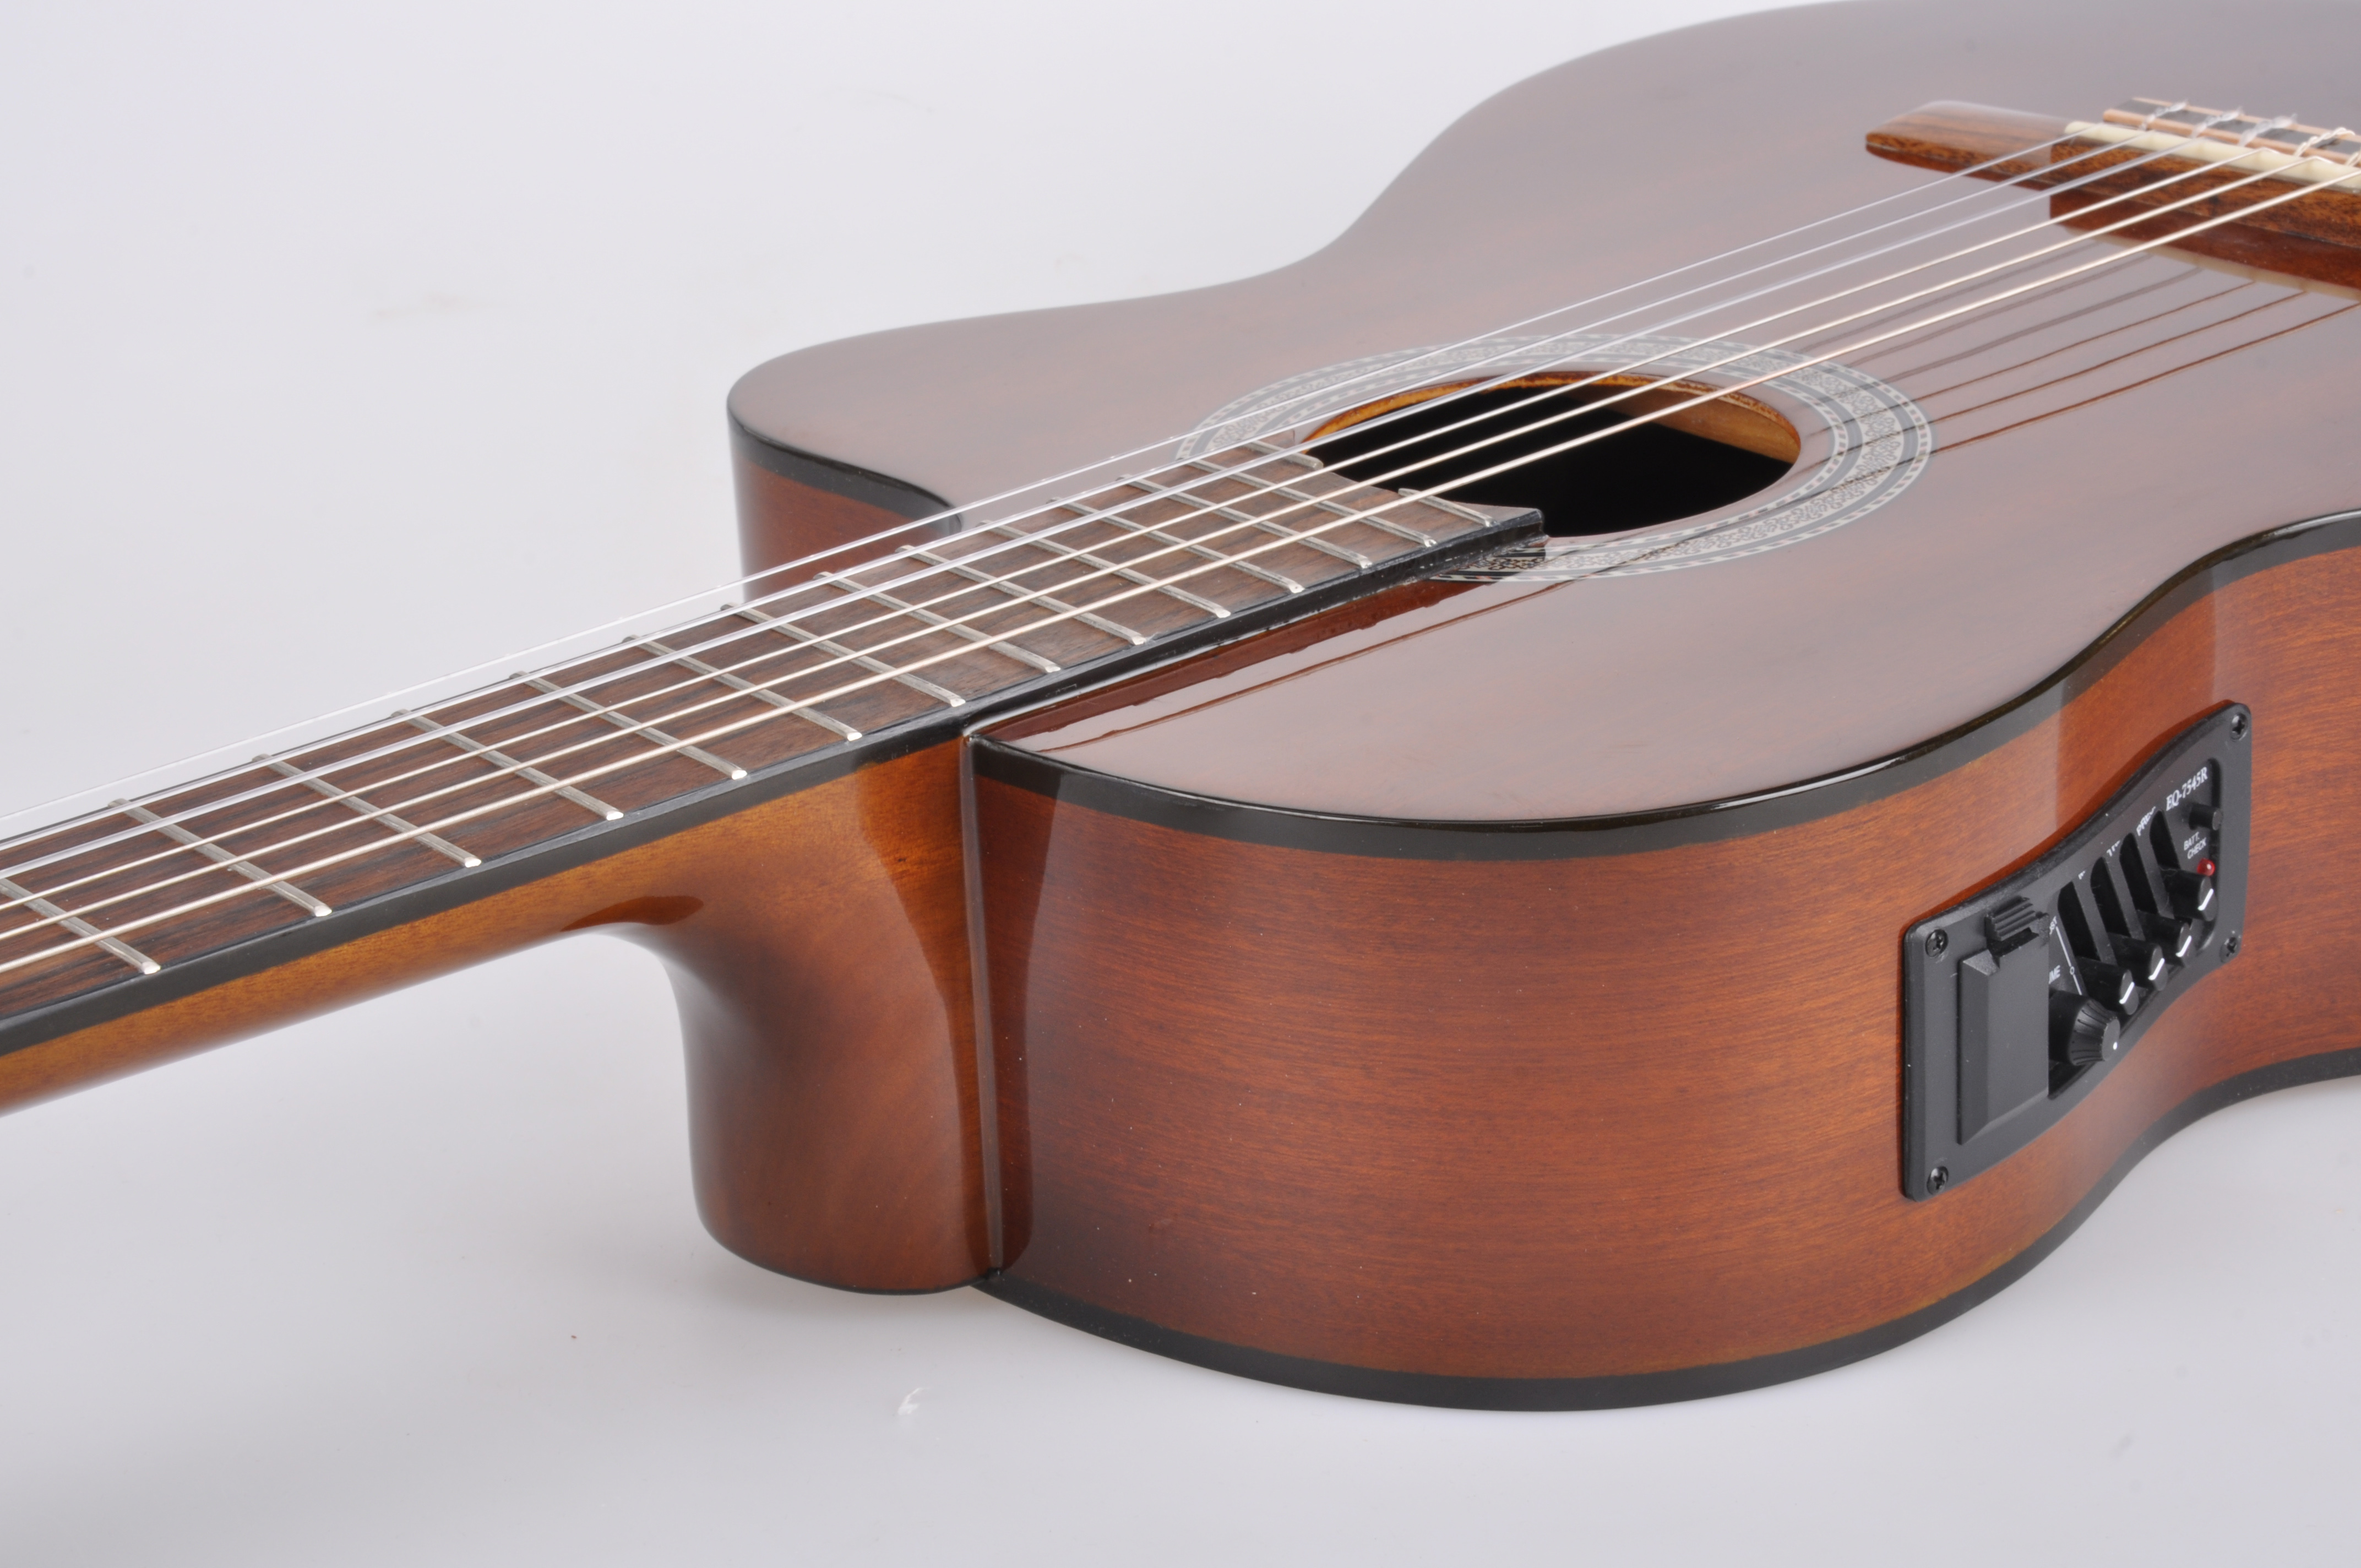 Электро-классическая гитара общего класса с вырезом 39 дюймов (AC309CE)